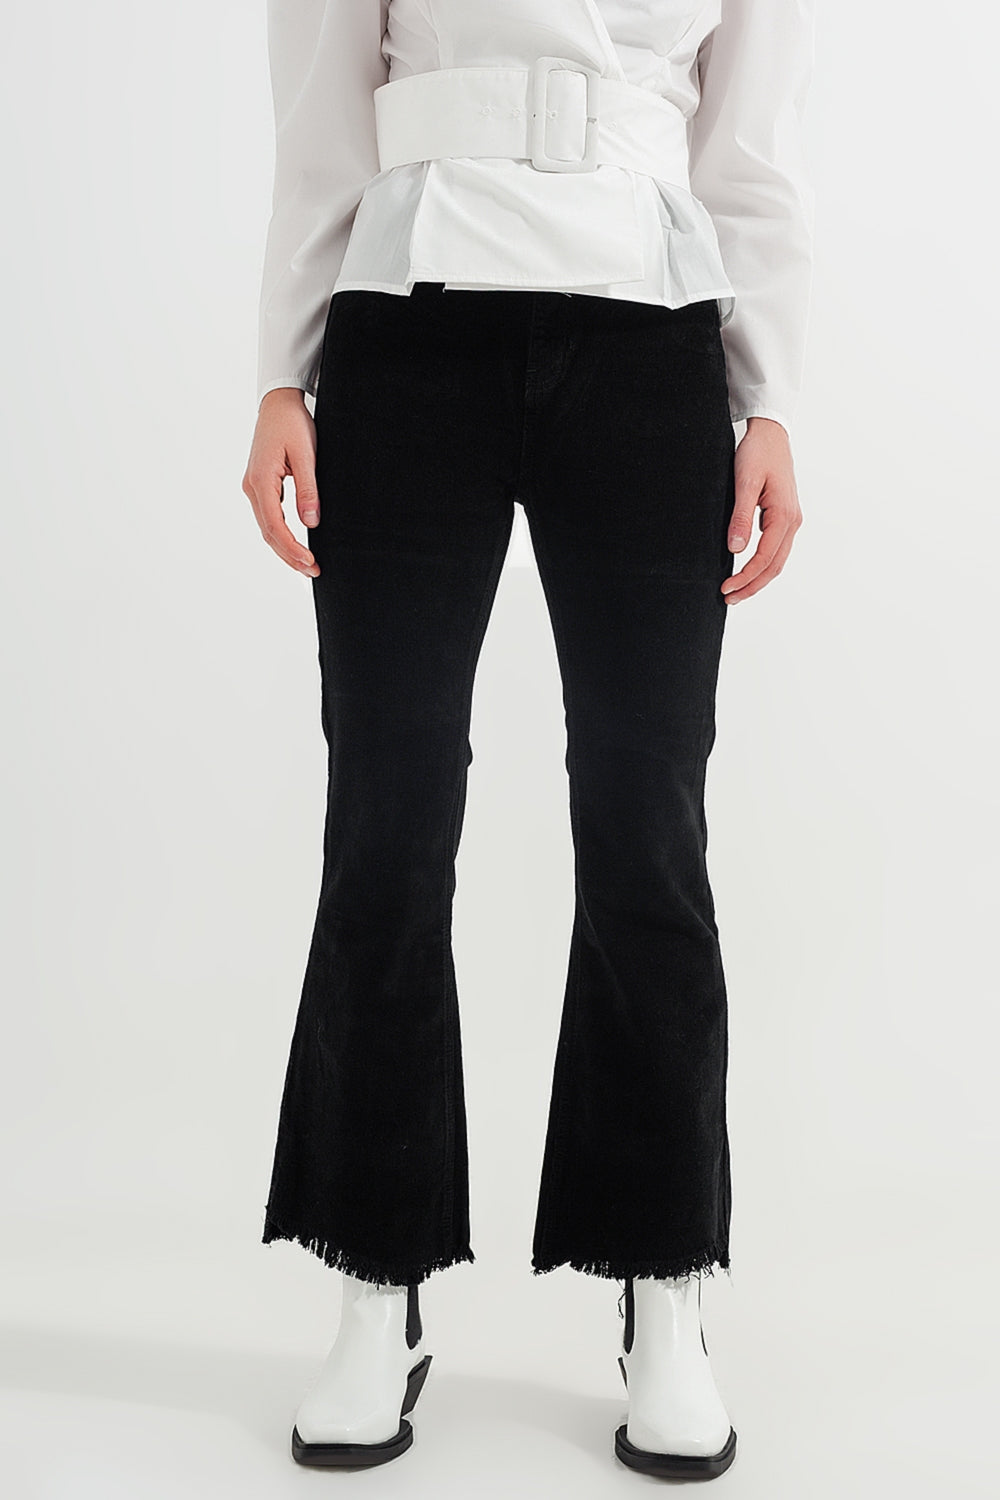 Q2 Pantaloni in velluto nero a zampa elasticizzati